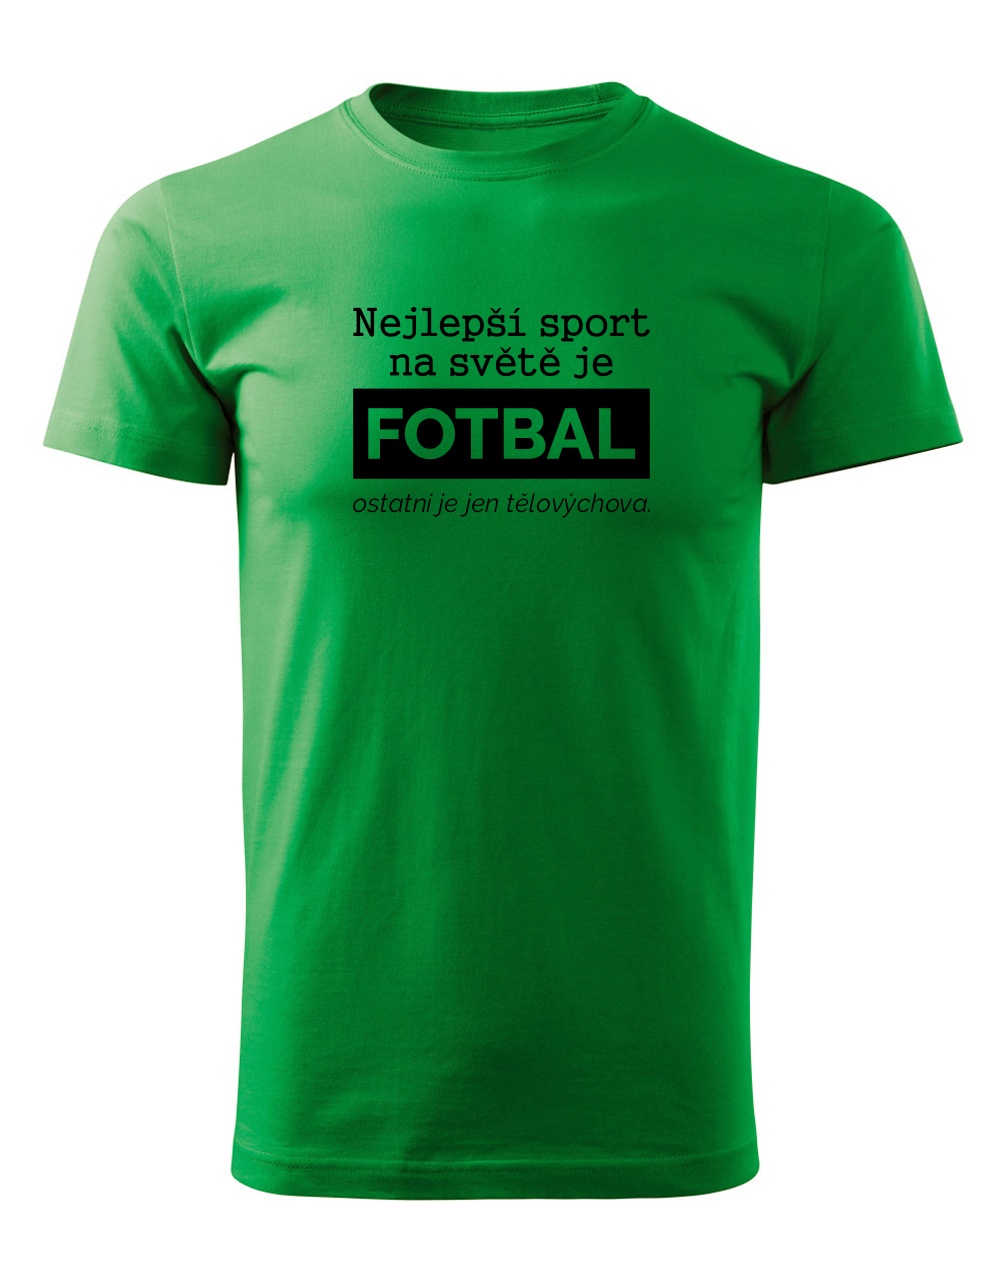 Pánské tričko s potiskem Nejlepší sport je fotbal světle zelená